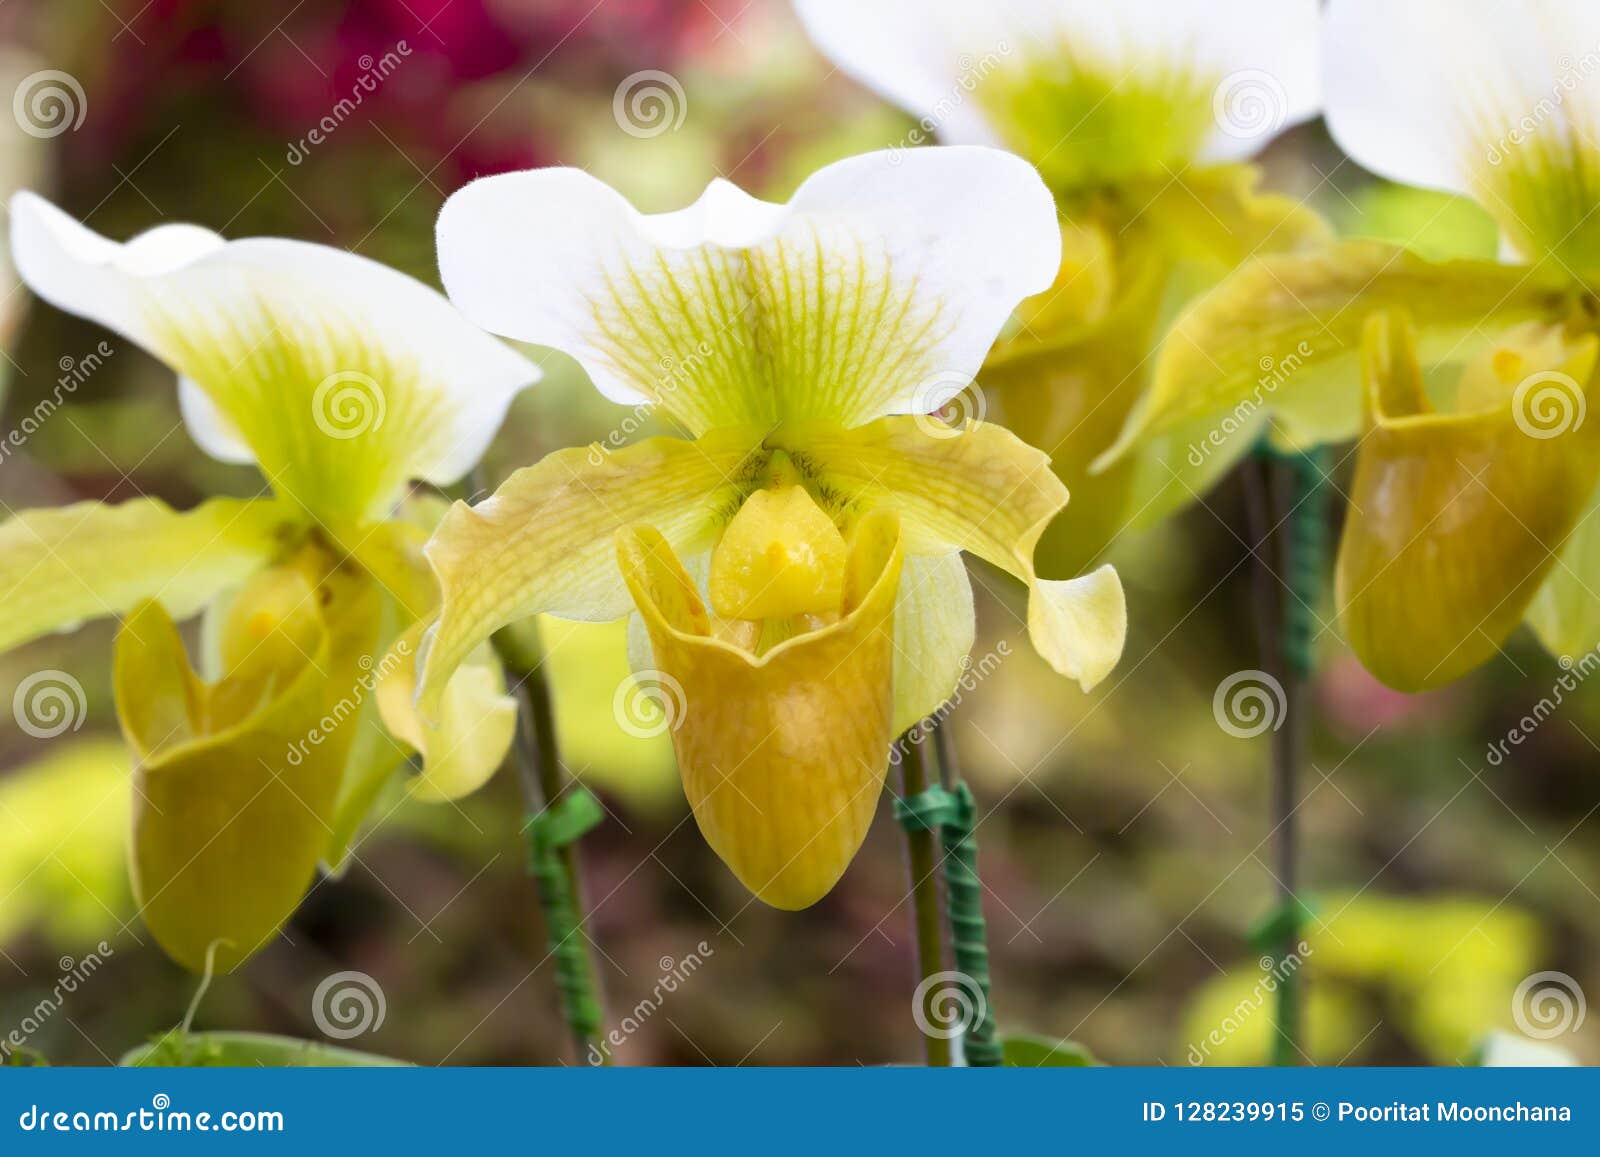 Orchidee schön in der Natur. Schöner Hintergrund, Licht und Farbe können an der Arbeit angewendet werden